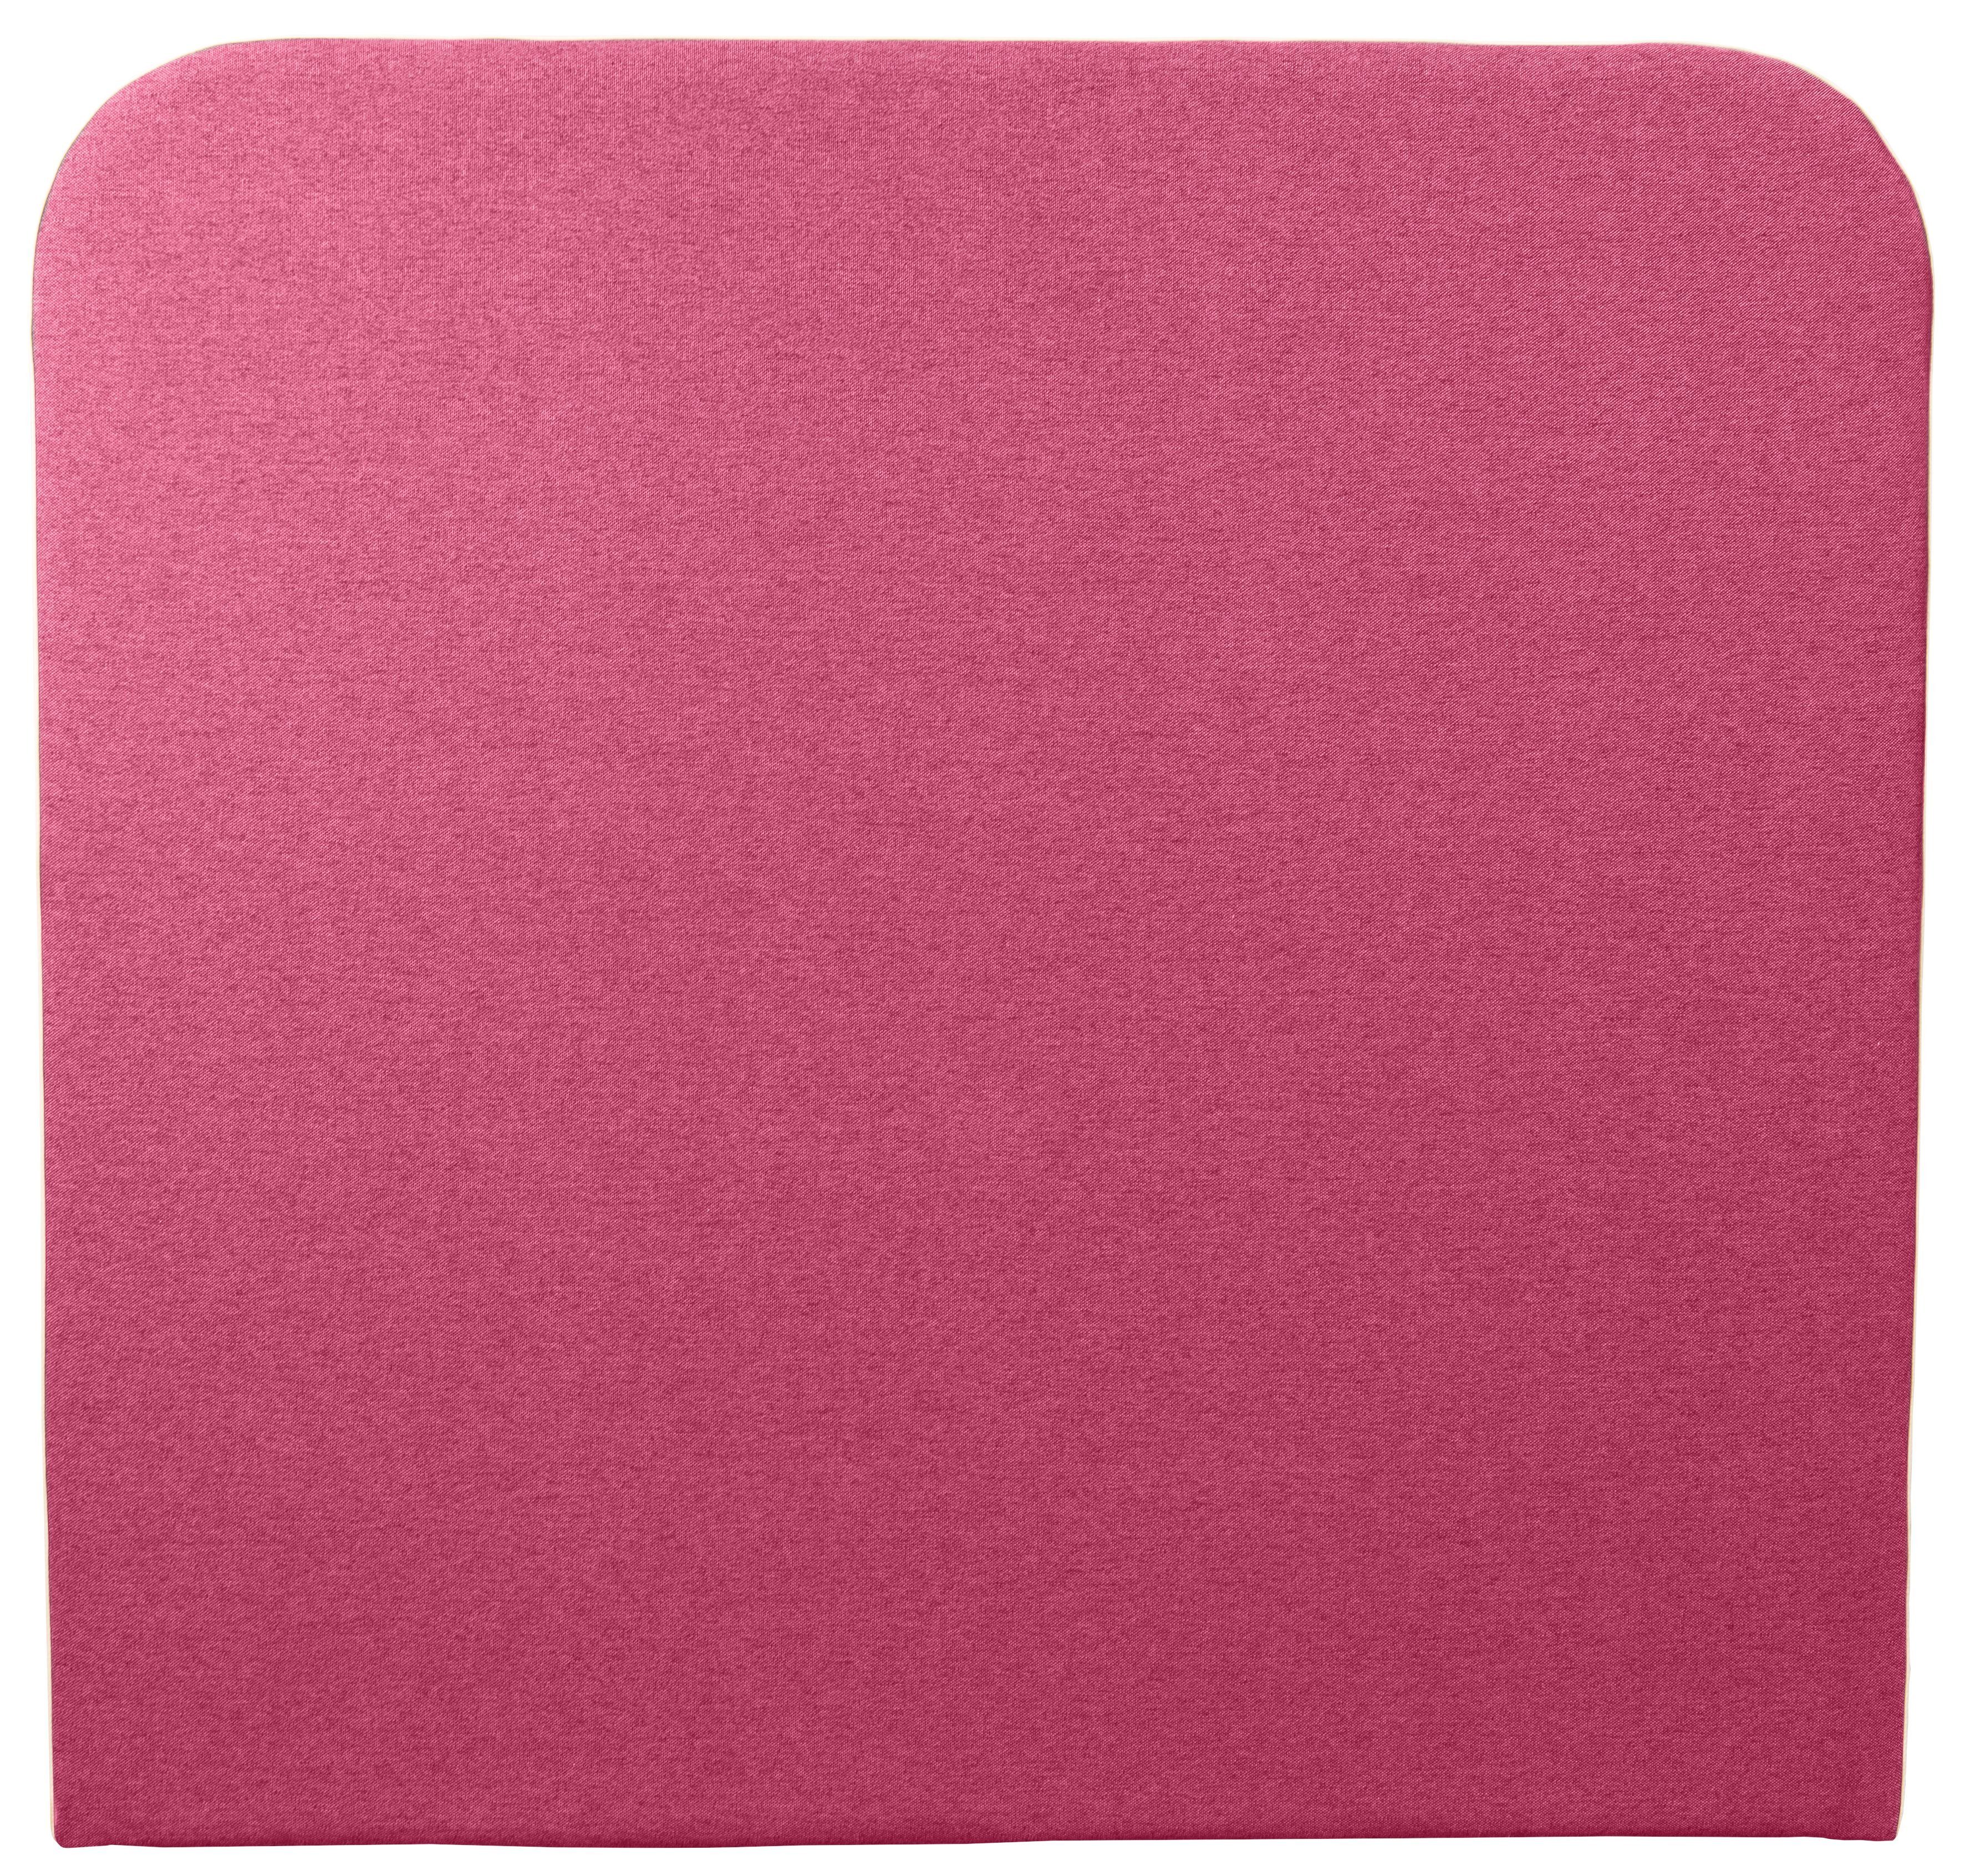 of Places Marausa, Kedernaht Taschen-Federkernmatratze, Style Boxspringbett mit pink mit dekorativer